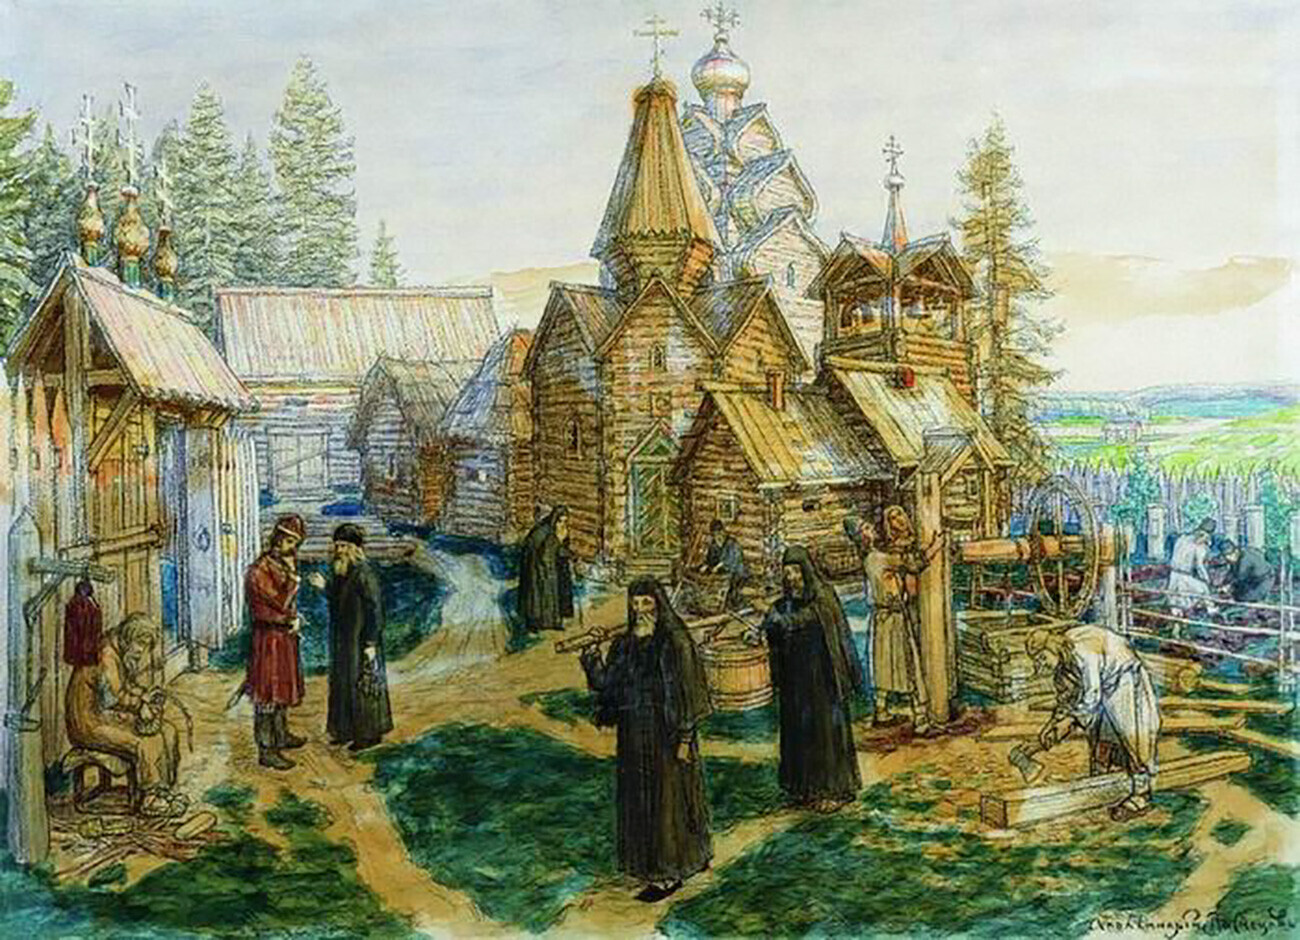 Троице-Сергиева лавра, 1908-1913.

